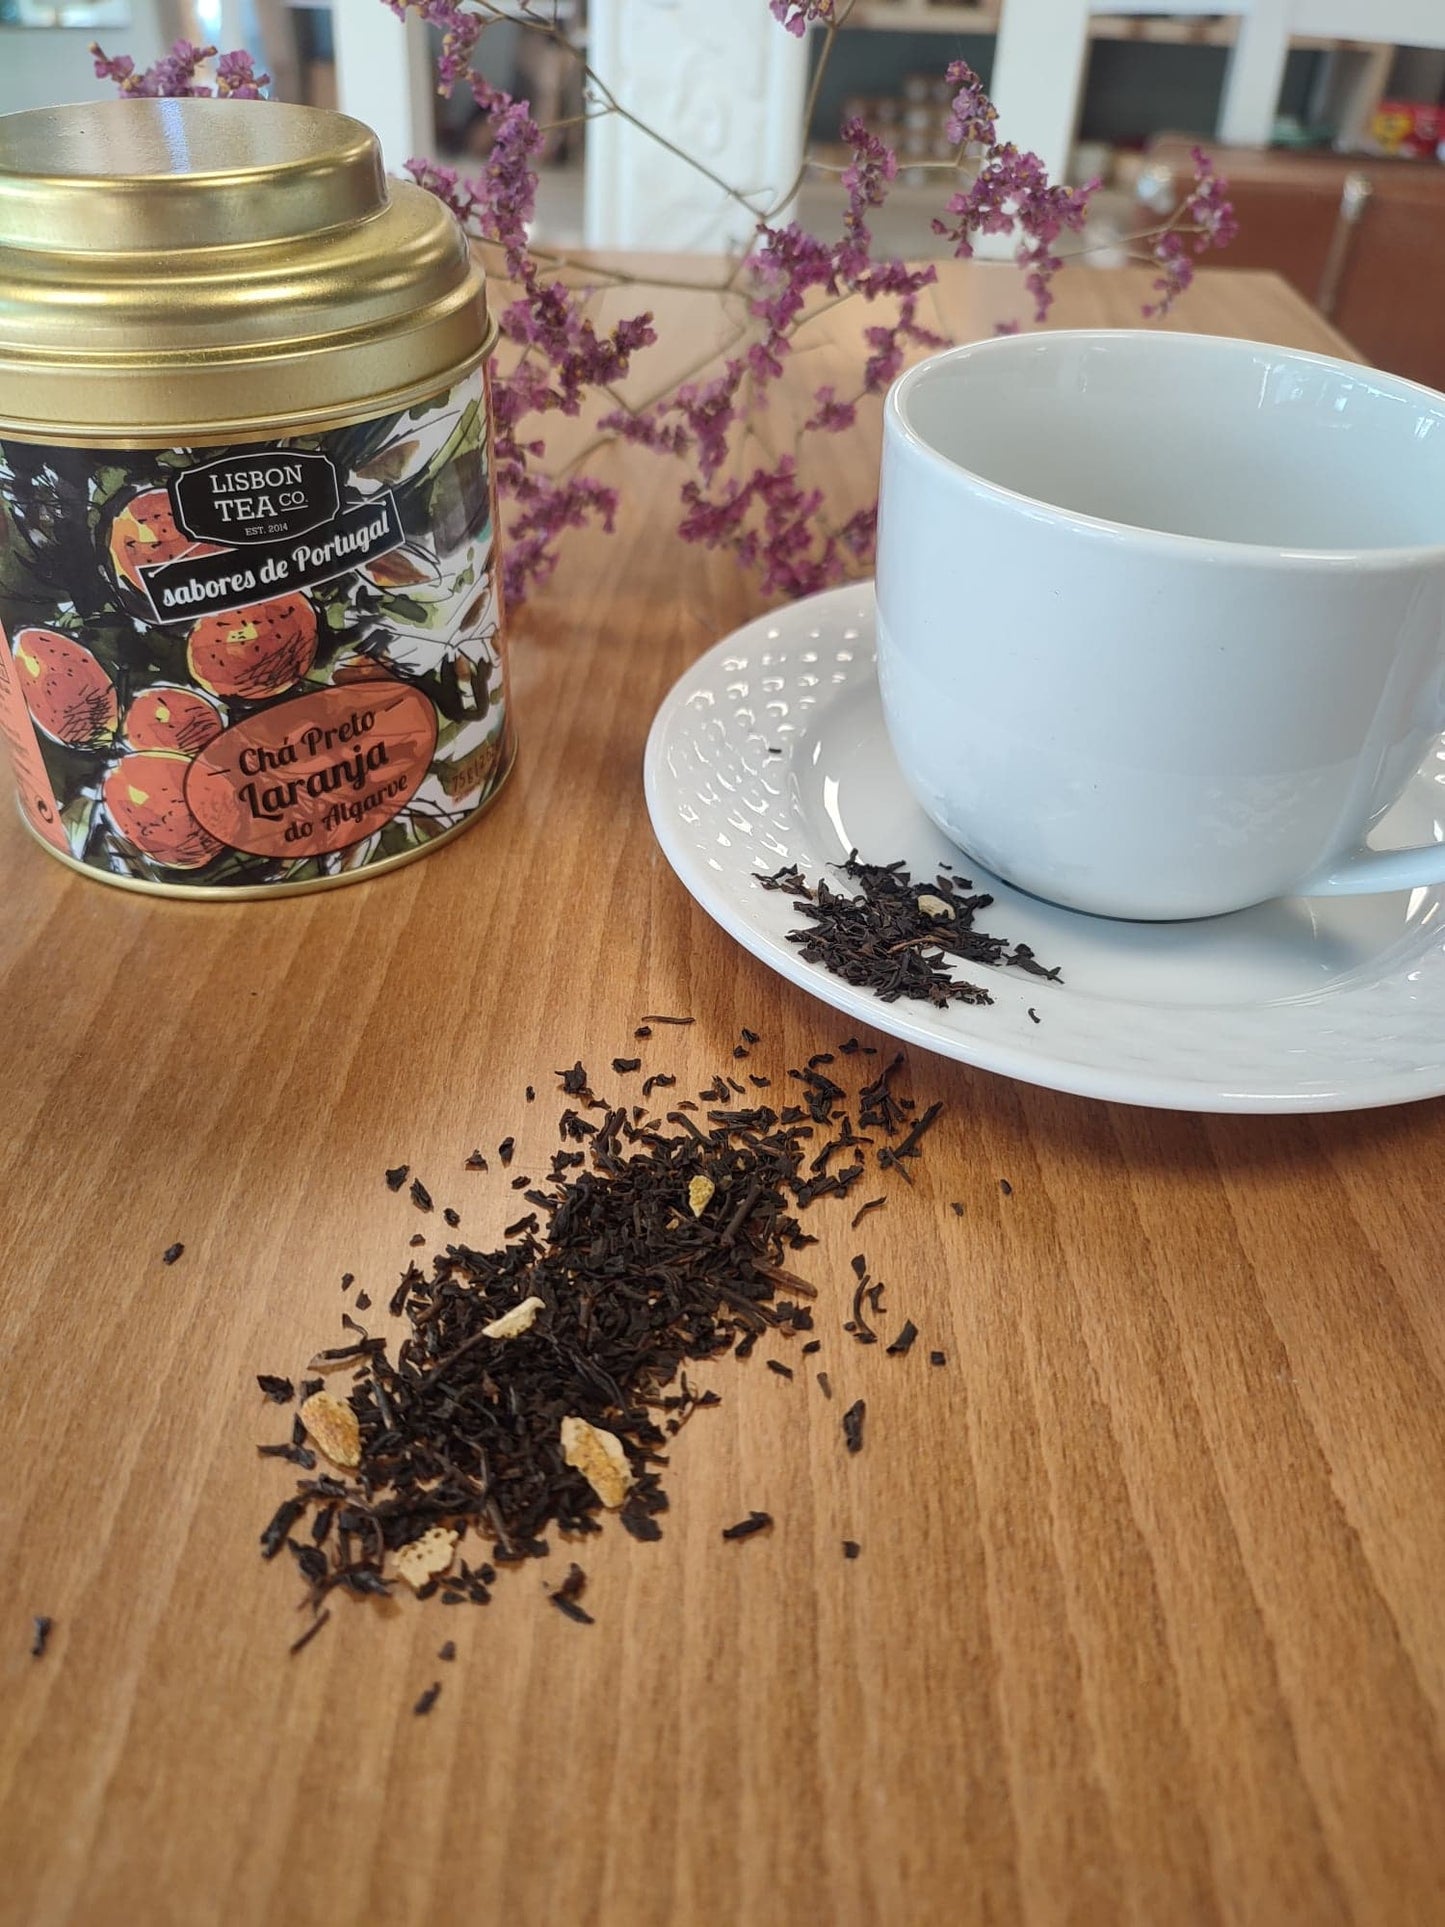 thé noir orange algarve boisson portugal lisbon tea co saudade concept store cherbourg normandie